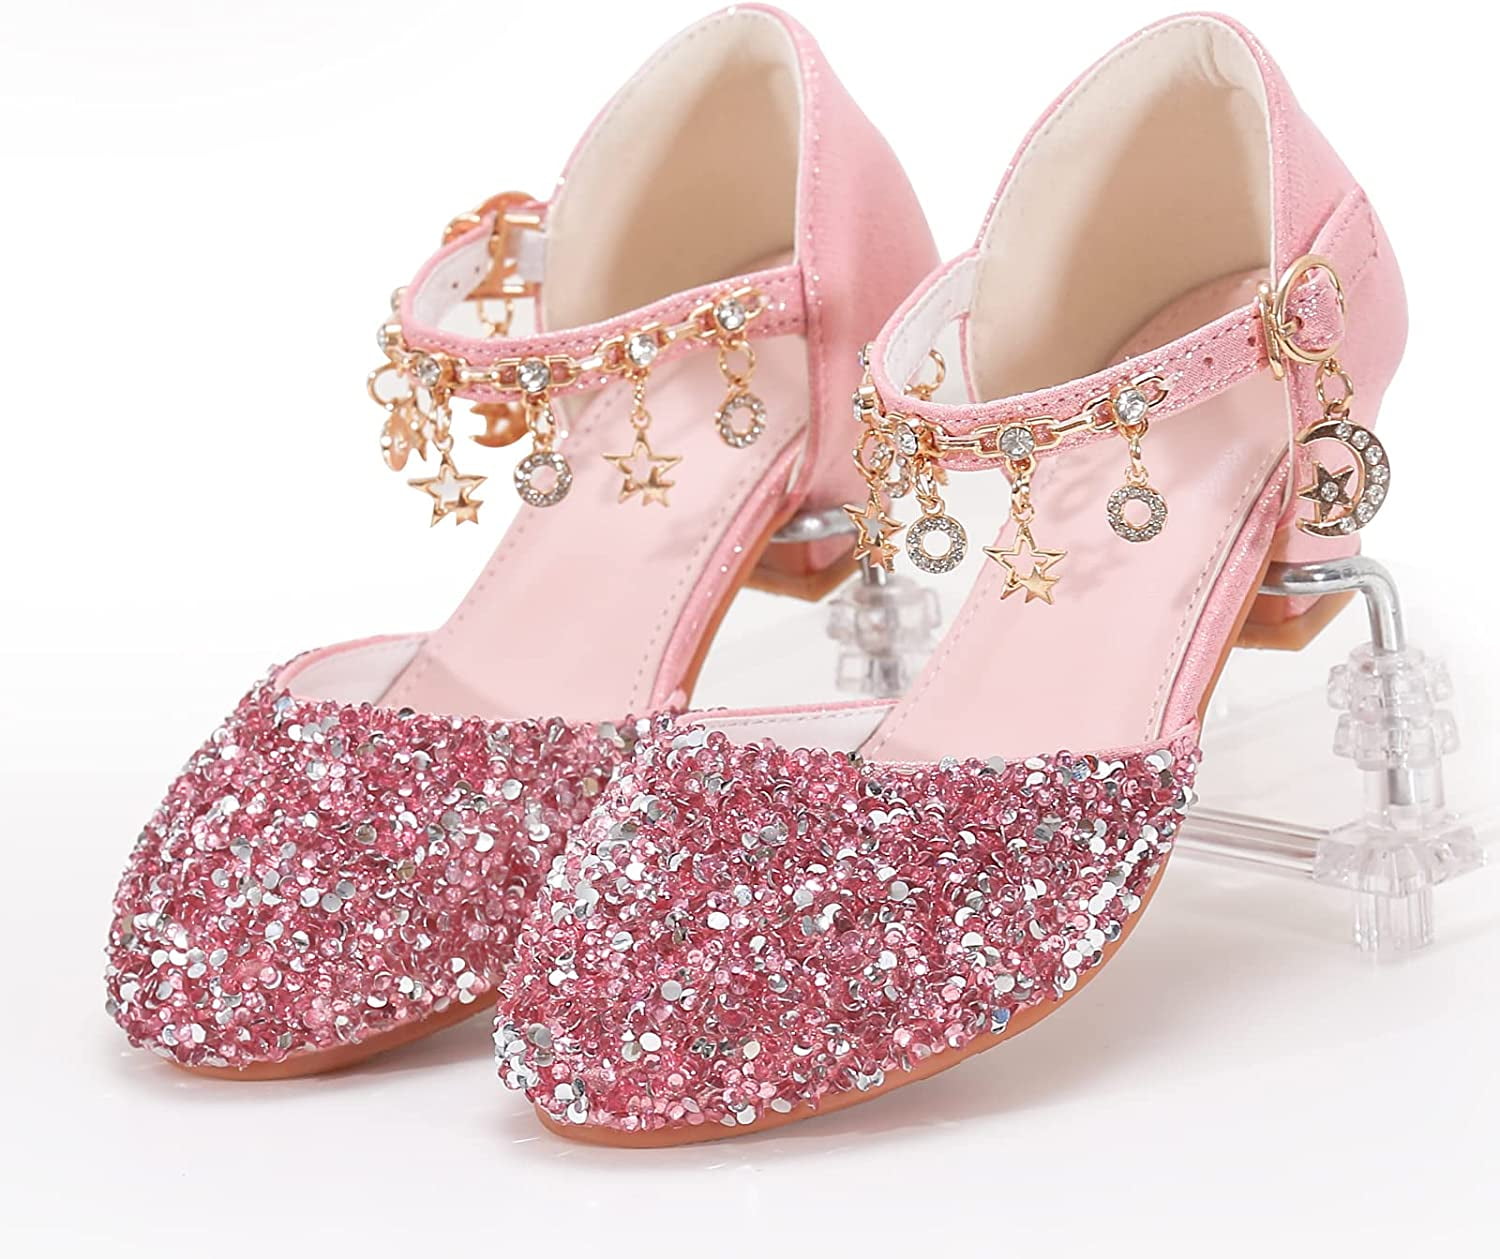 little girls heels Girls Heel Glitter Shoes Dusty Pink Rock Glitter Mary-jane ...